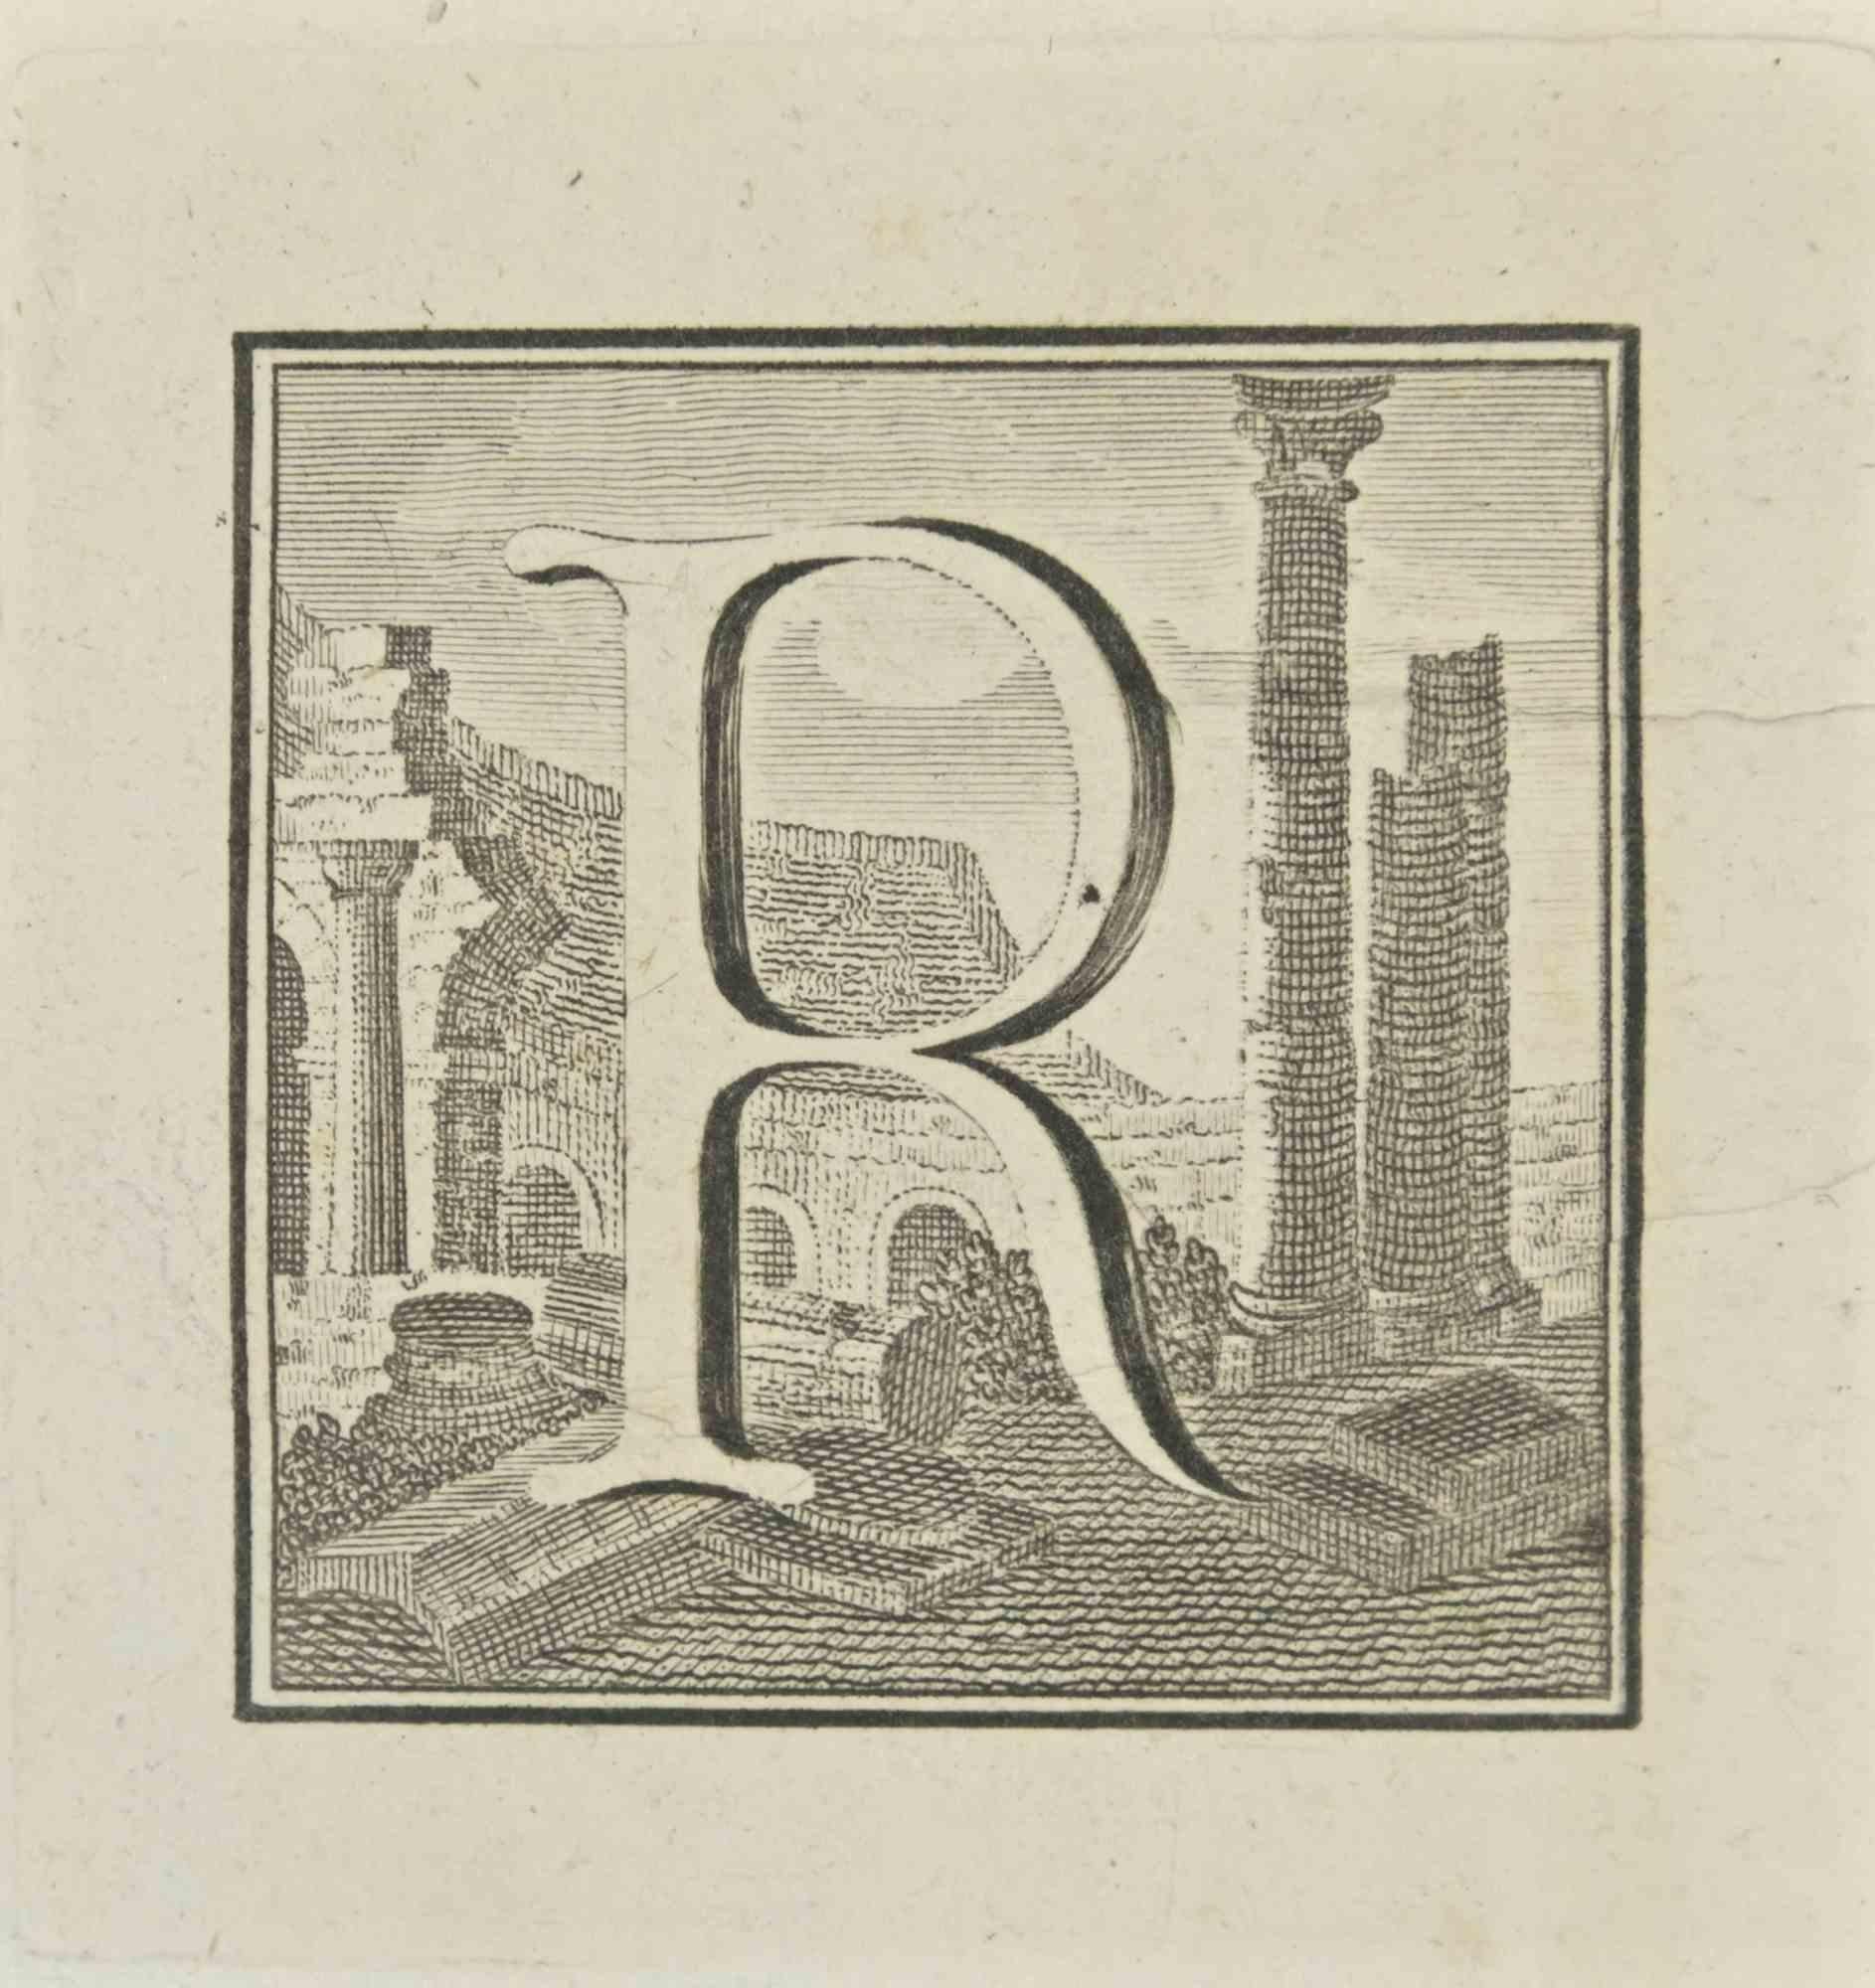 La lettre R est une gravure réalisée par Luigi Vanvitelli, artiste du XVIIIe siècle.

La gravure appartient à la suite d'estampes "Antiquités d'Herculanum exposées" (titre original : "Le Antichità di Ercolano Esposte"), un volume de huit gravures